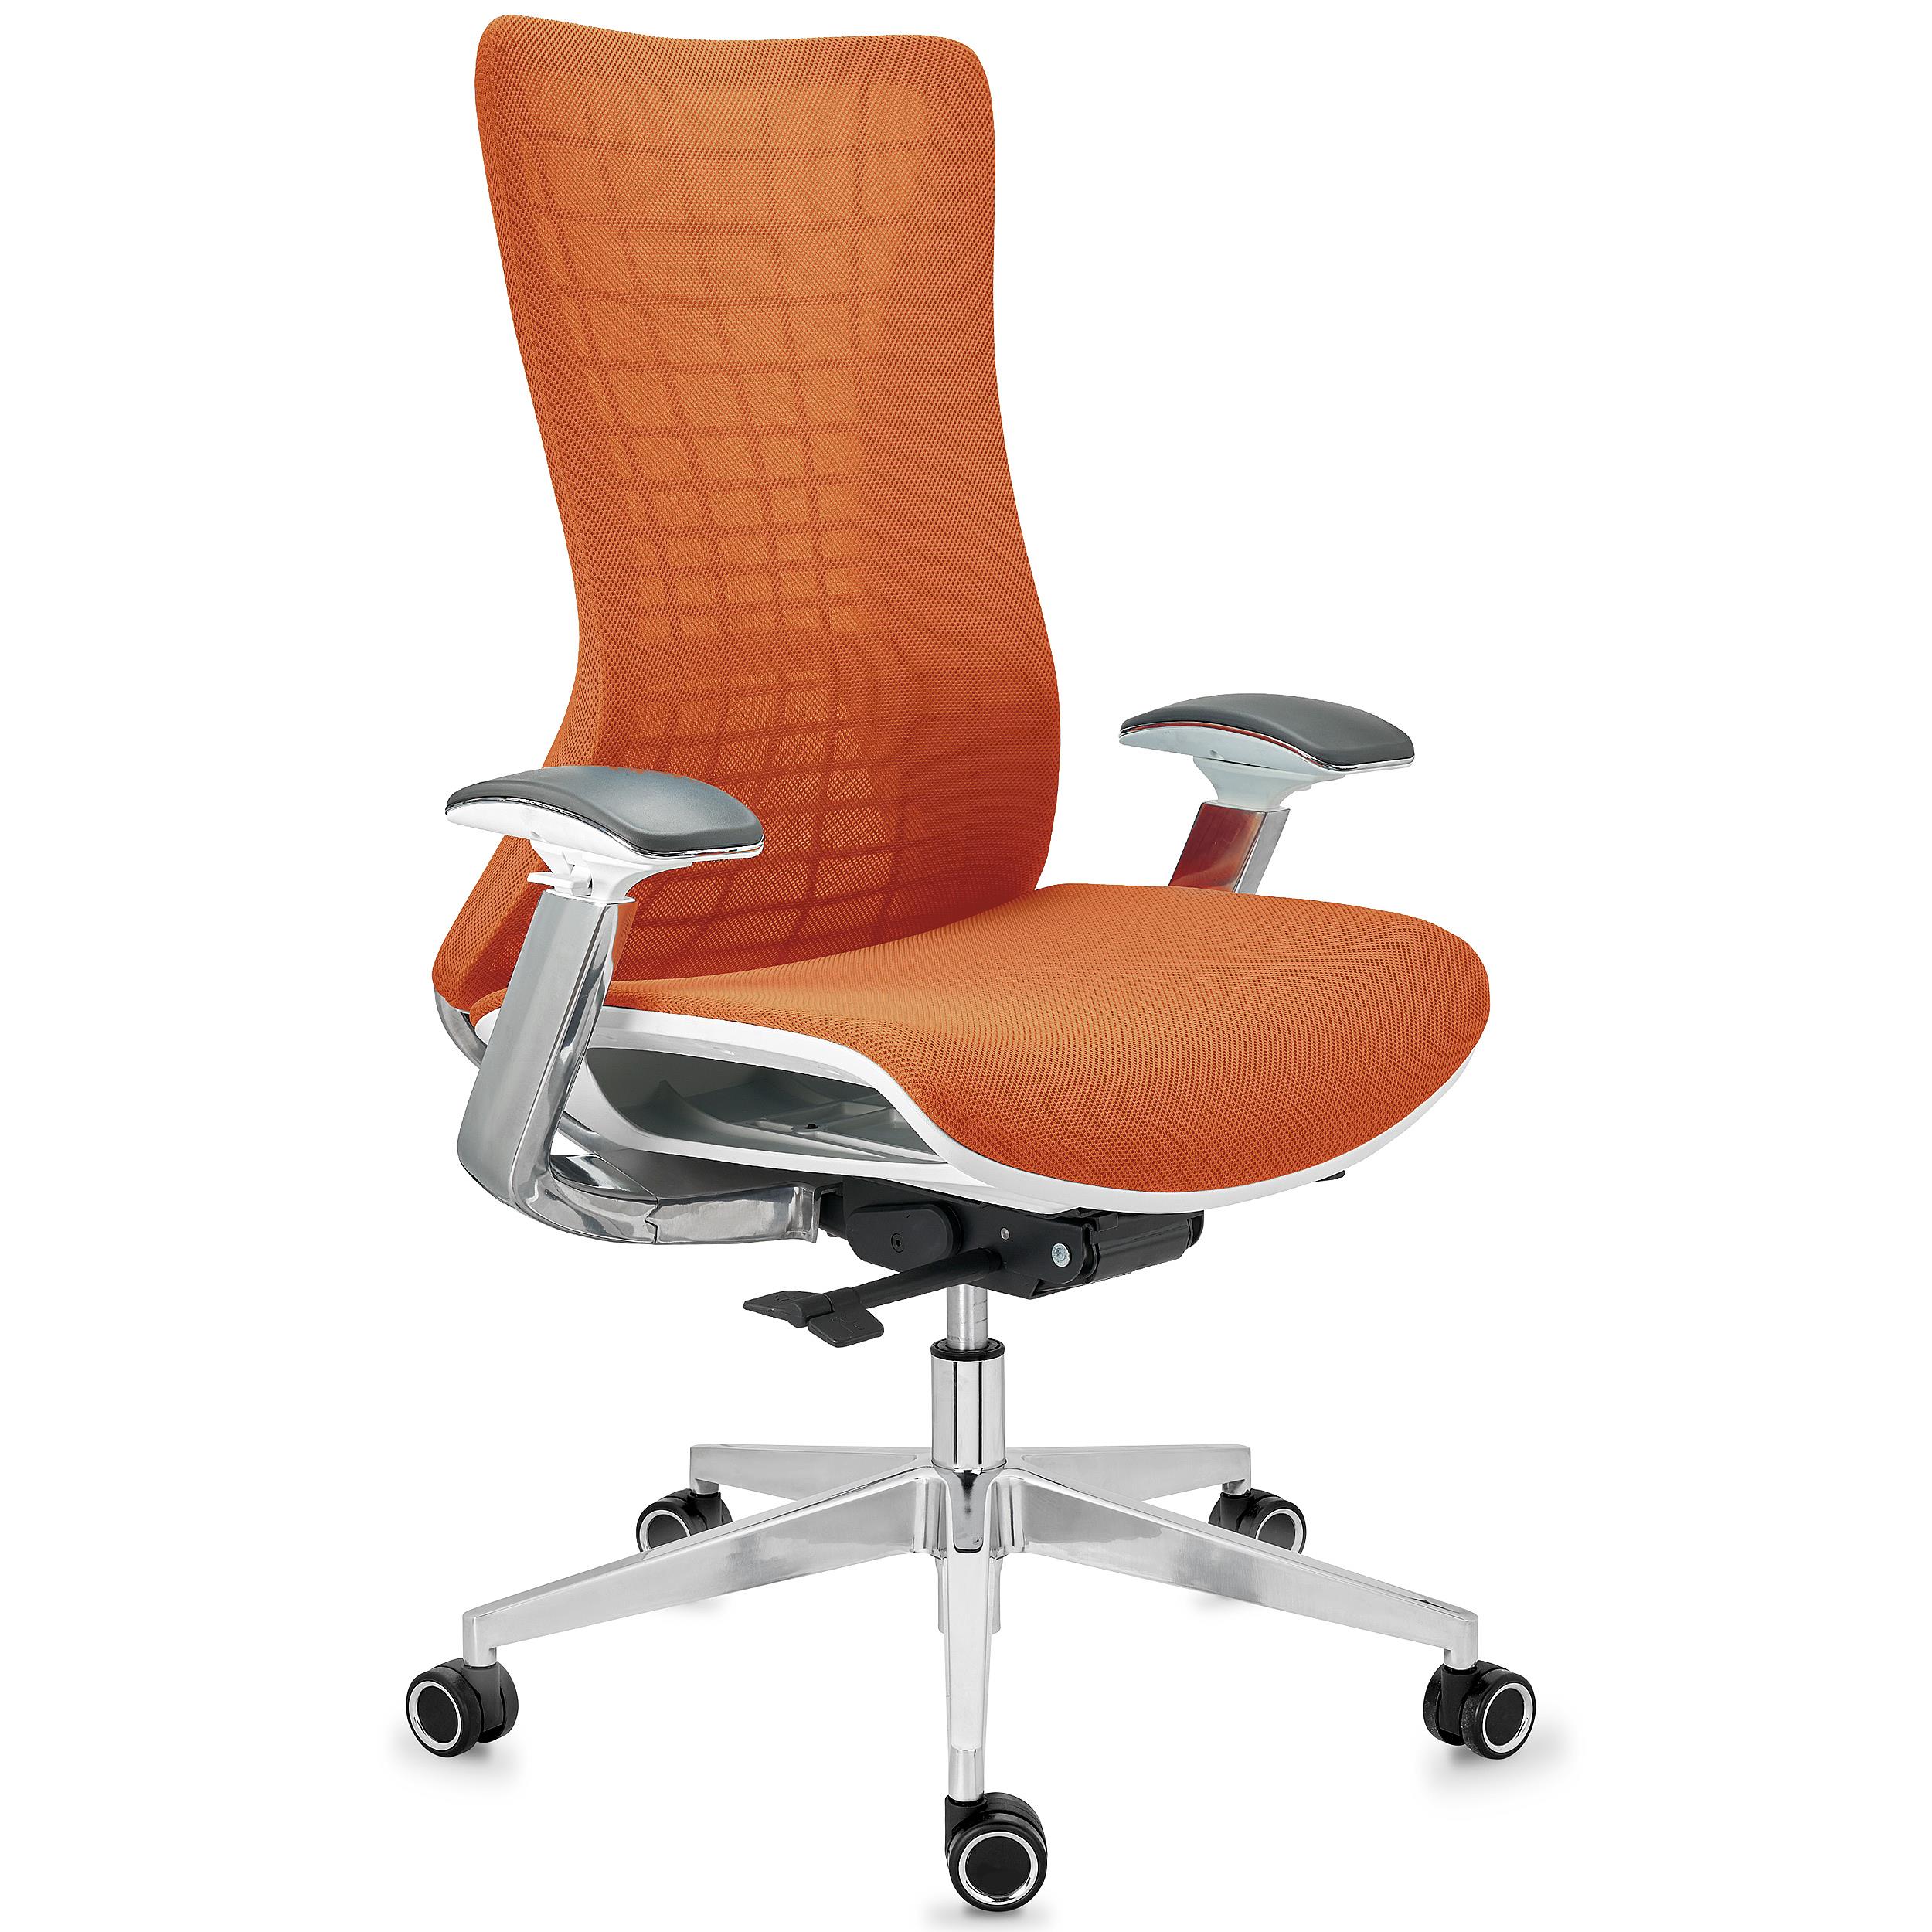 Chaise Ergonomique ENERGY, Design Unique, Excellente Qualité, en Maille, Orange